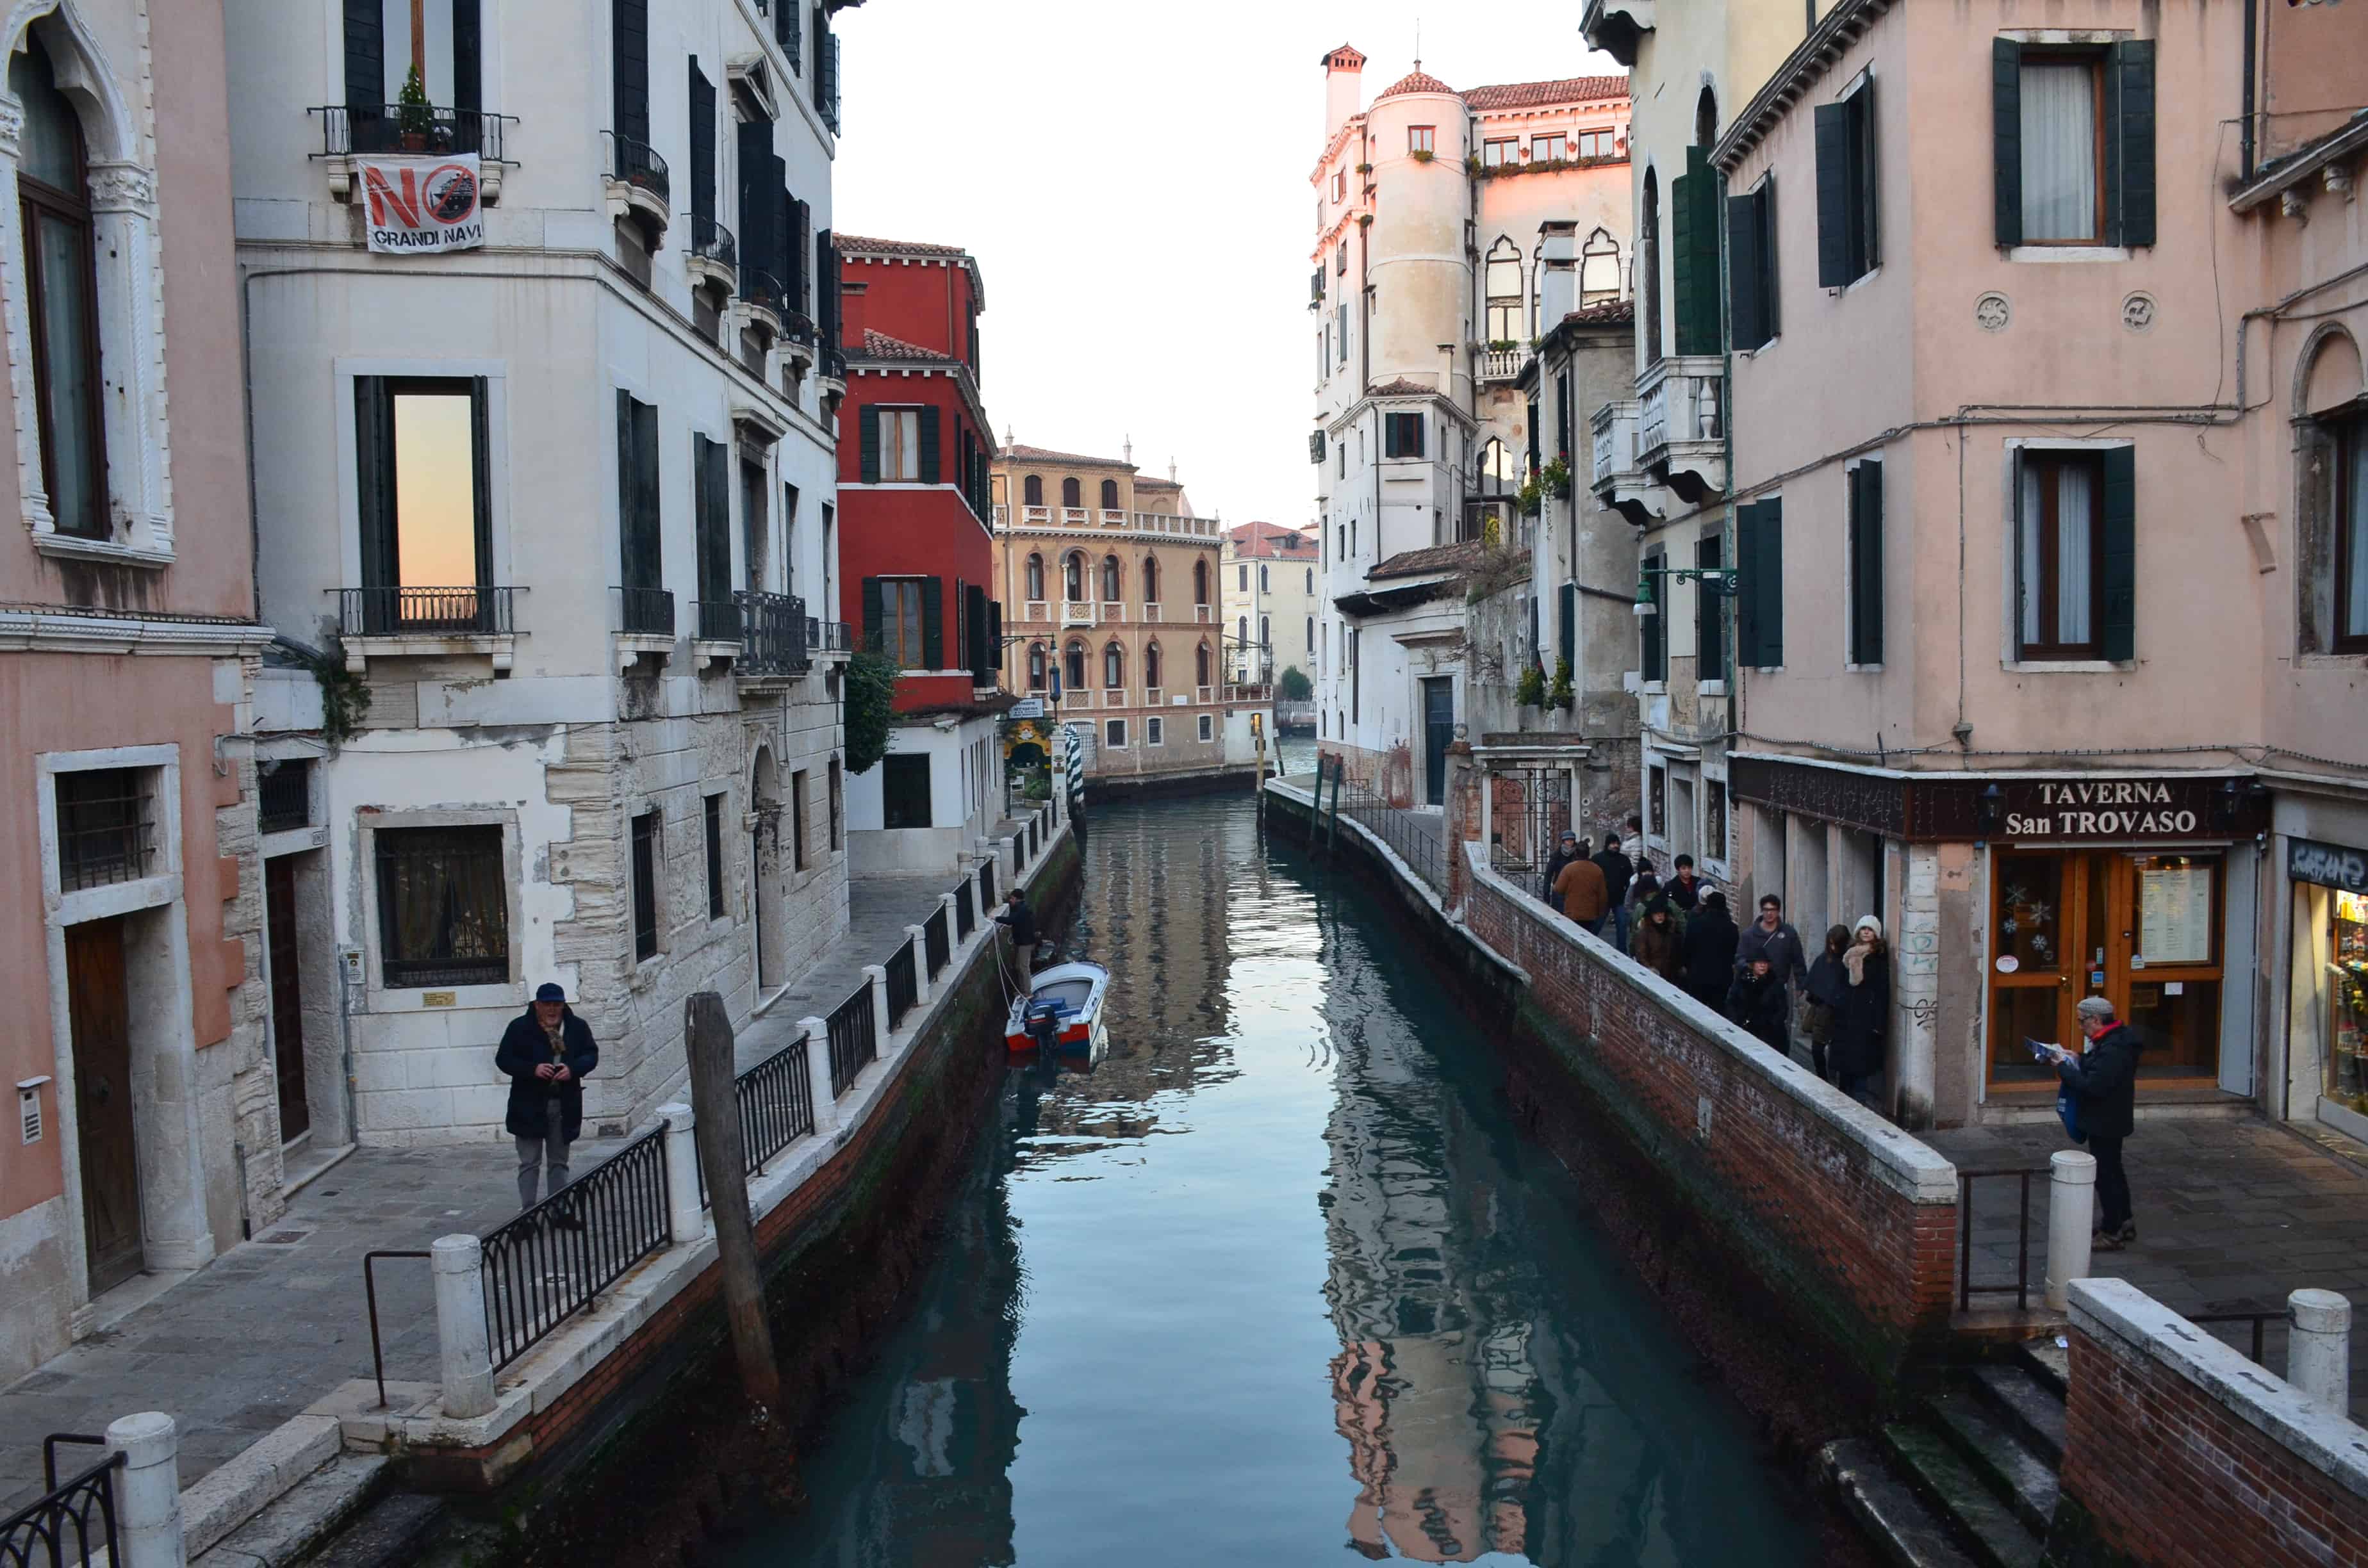 A canal in Dorsoduro in Venice, Italy